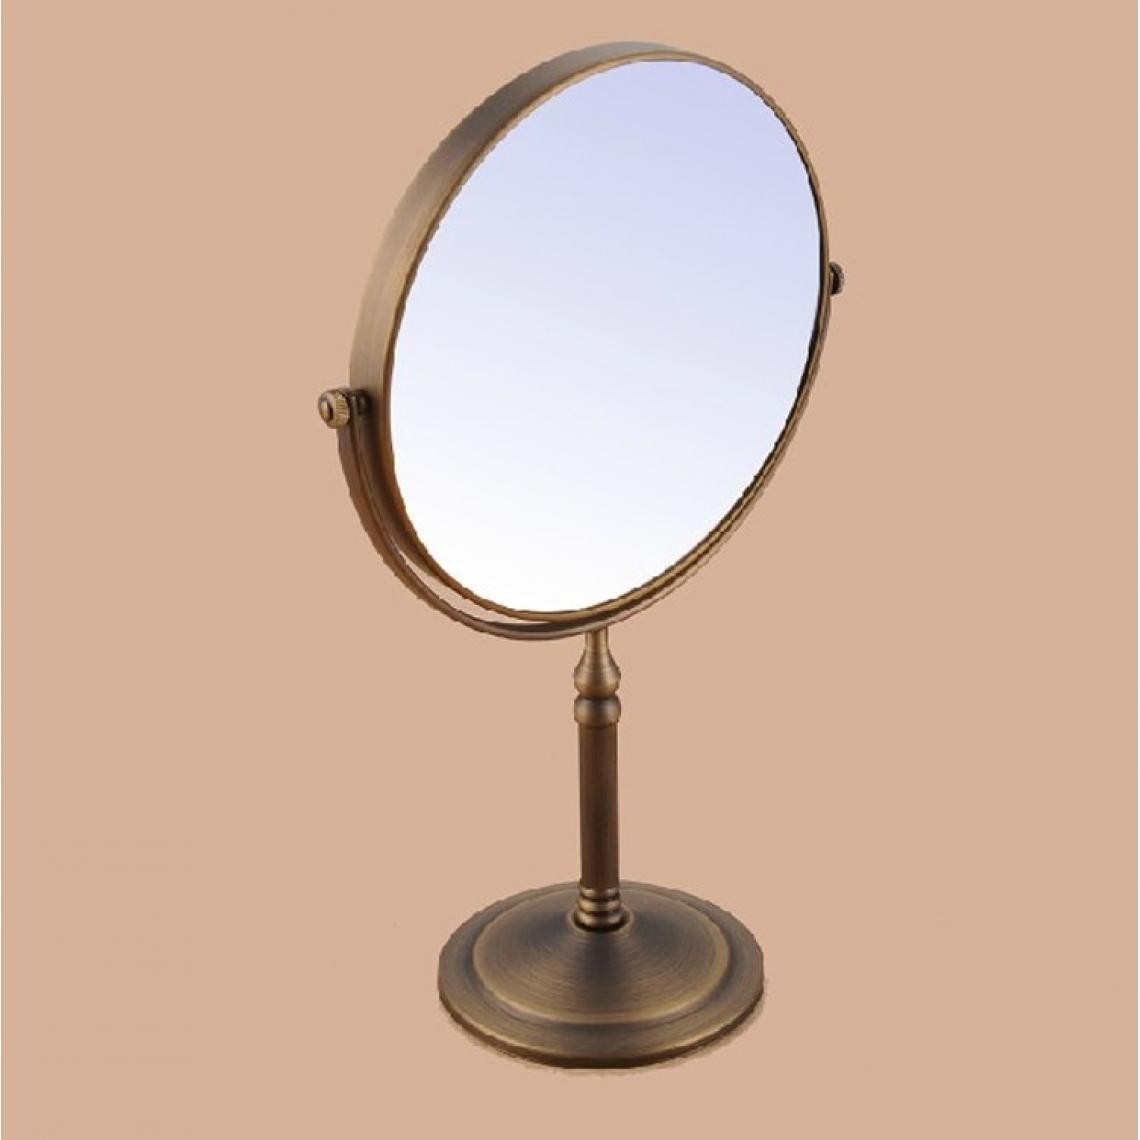 Universal - Brosse antique en laiton table double face 8 pouces miroir rasage maquillage 3x loupe salle de bains toilettes quincaillerie | quincaillerie | quincaillerie accessoires métalliques nissan cuisine(Or) - Miroir de salle de bain